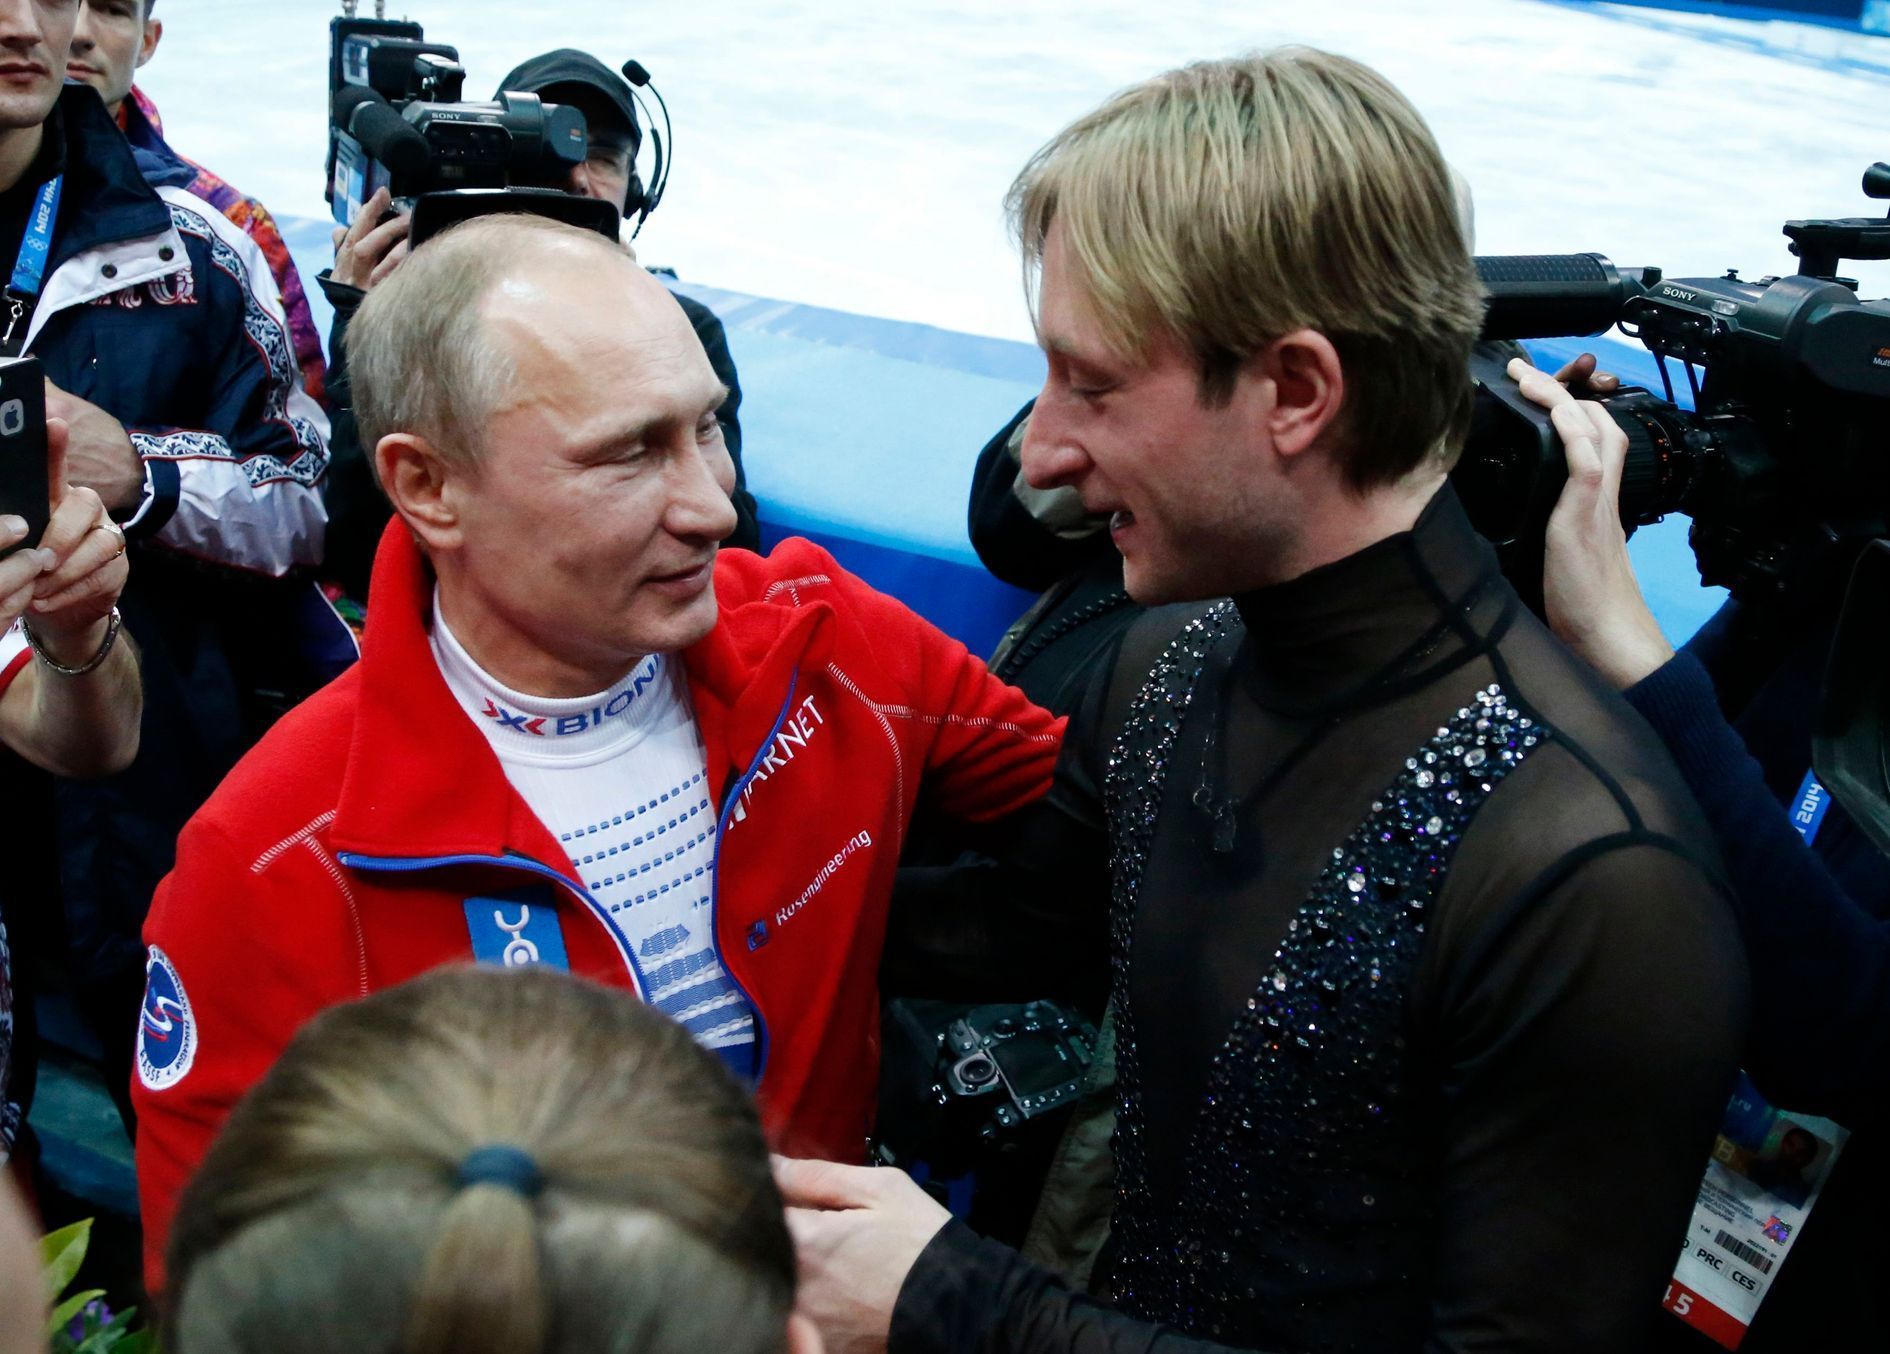 Soči 2014, krasobruslení: Vladimir Putin a Jevgenij Pljuščenko